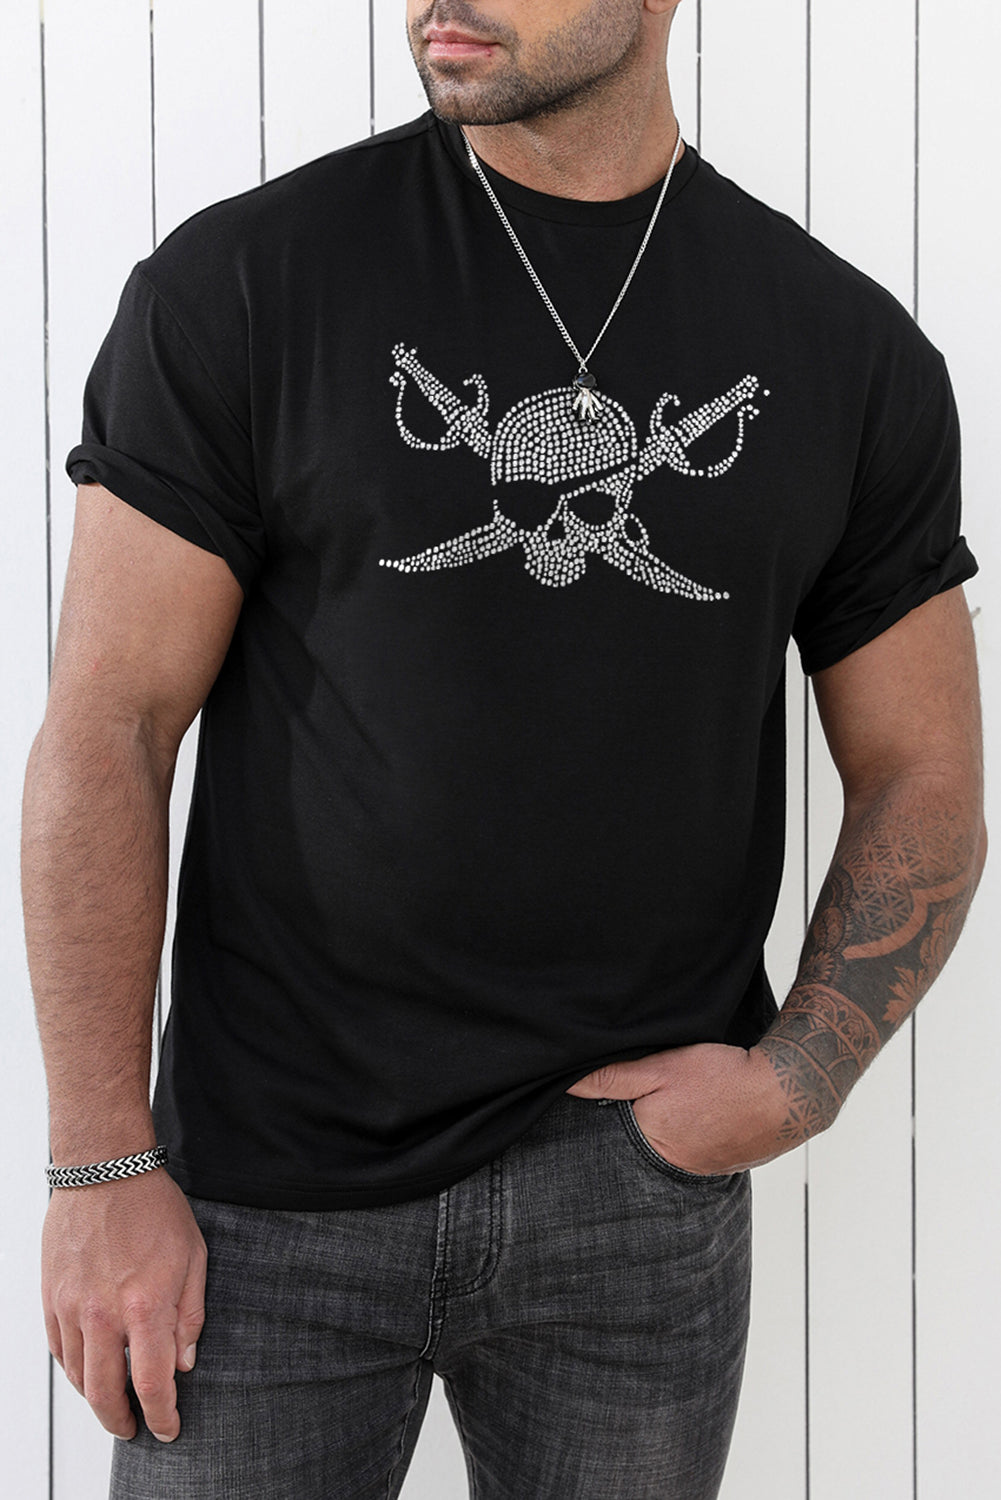 Black Pirate Skull Dot Plot Mens Short Sleeve T Shirt Black 62%Polyester+32%Cotton+6%Elastane Men's Tops JT's Designer Fashion